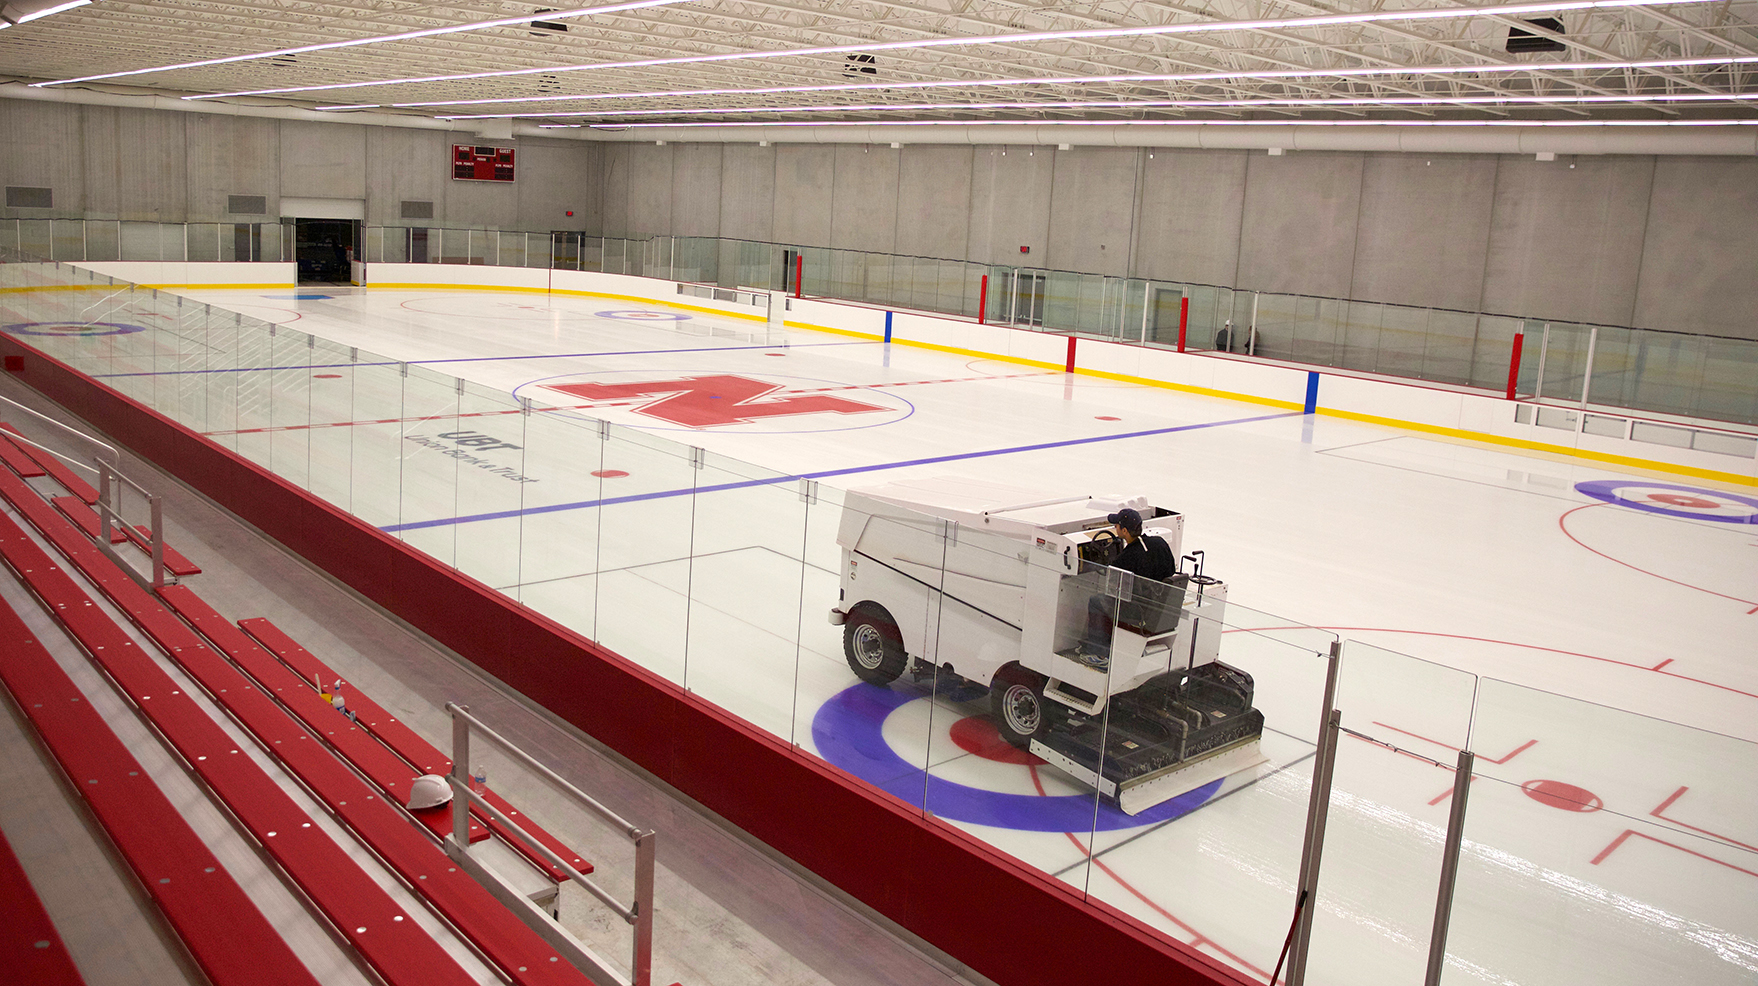 Ice Arena, Campus Recreation